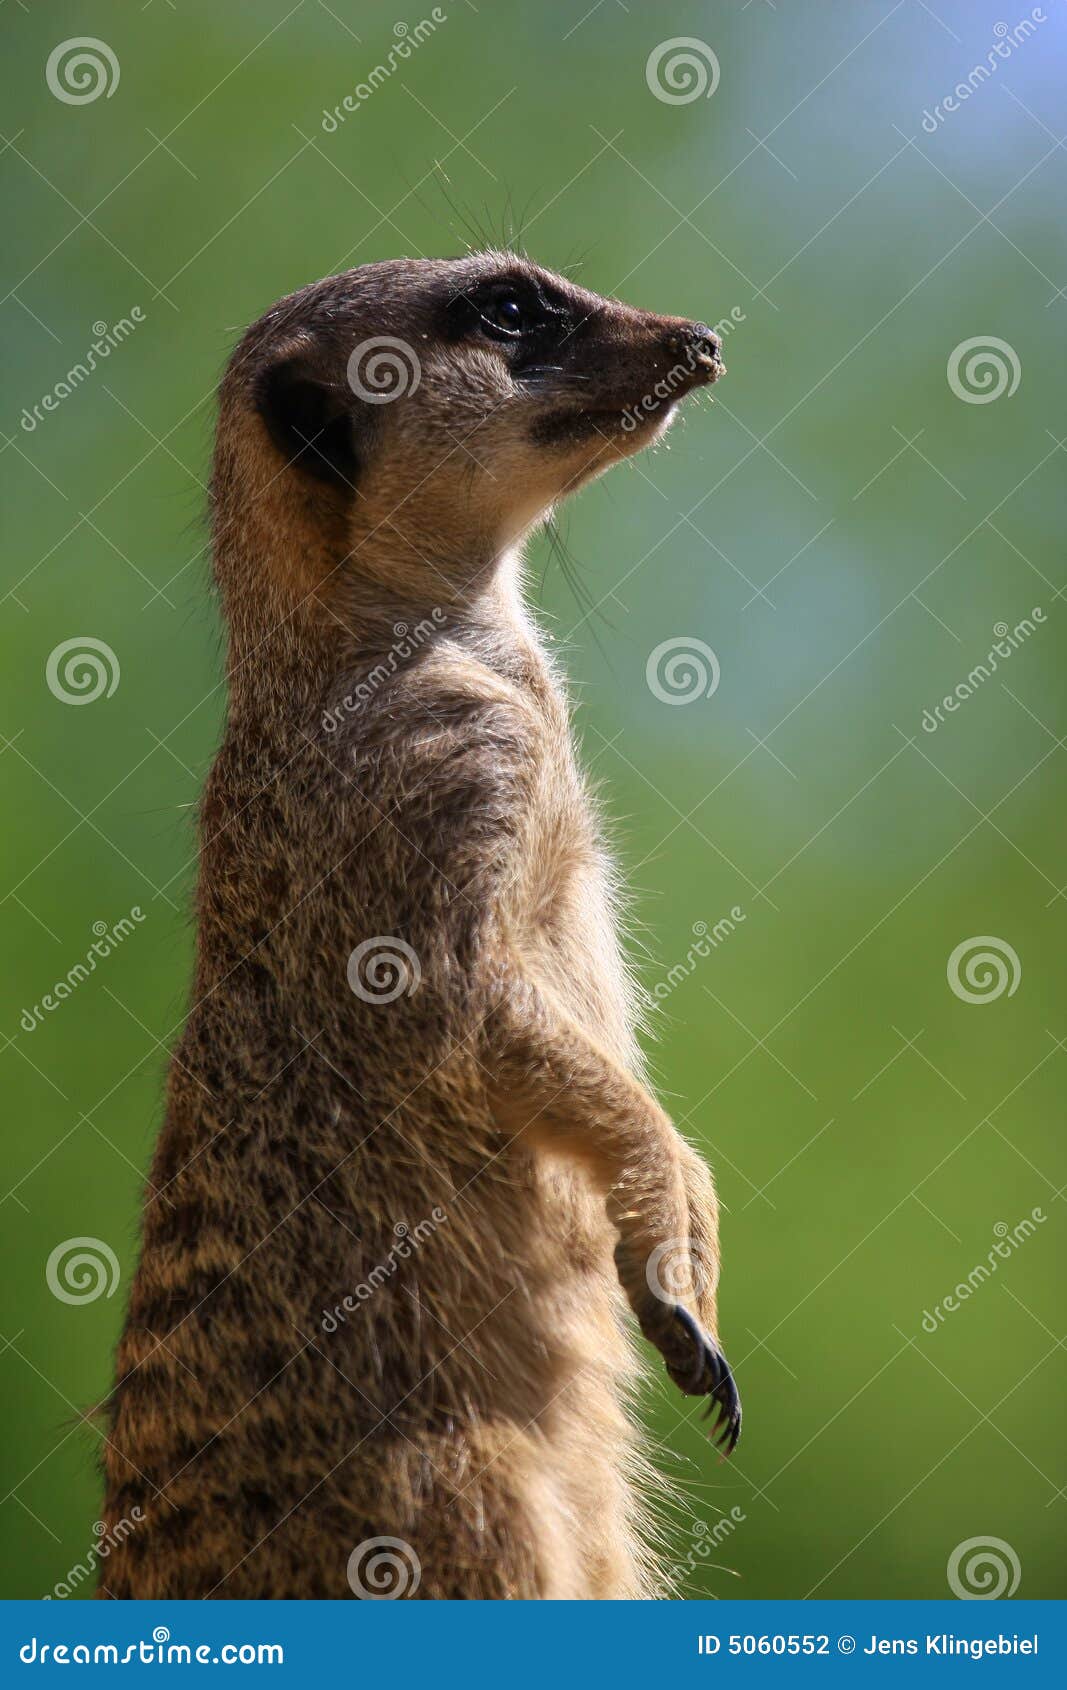 meercat